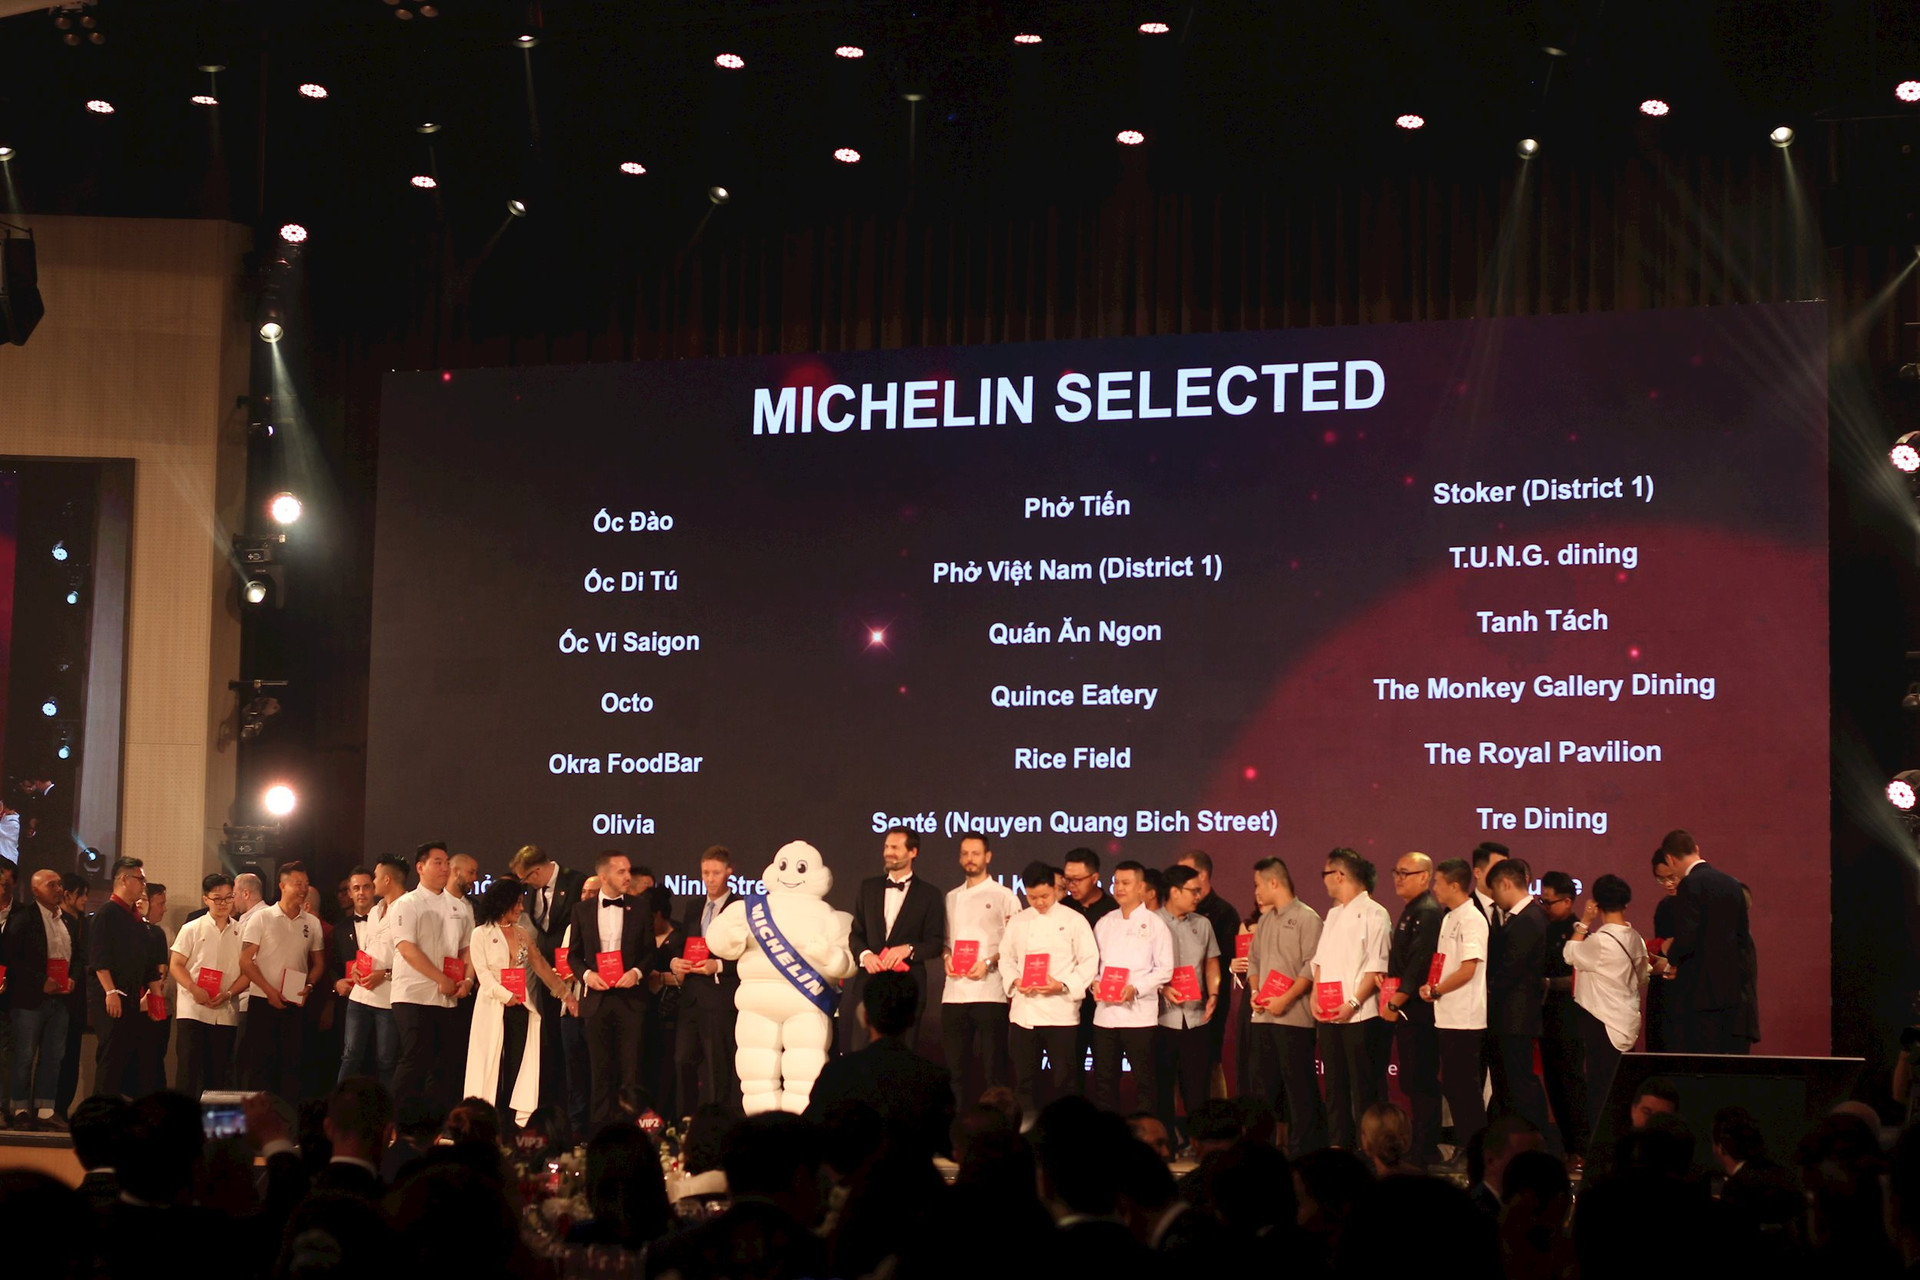 Michelin chính thức vào Việt Nam: 103 nhà hàng Việt Nam được vinh danh, từ nhà hàng sang chảnh TUNG Dining, tới quán bình dân Bún chả “Obama” - Ảnh 1.